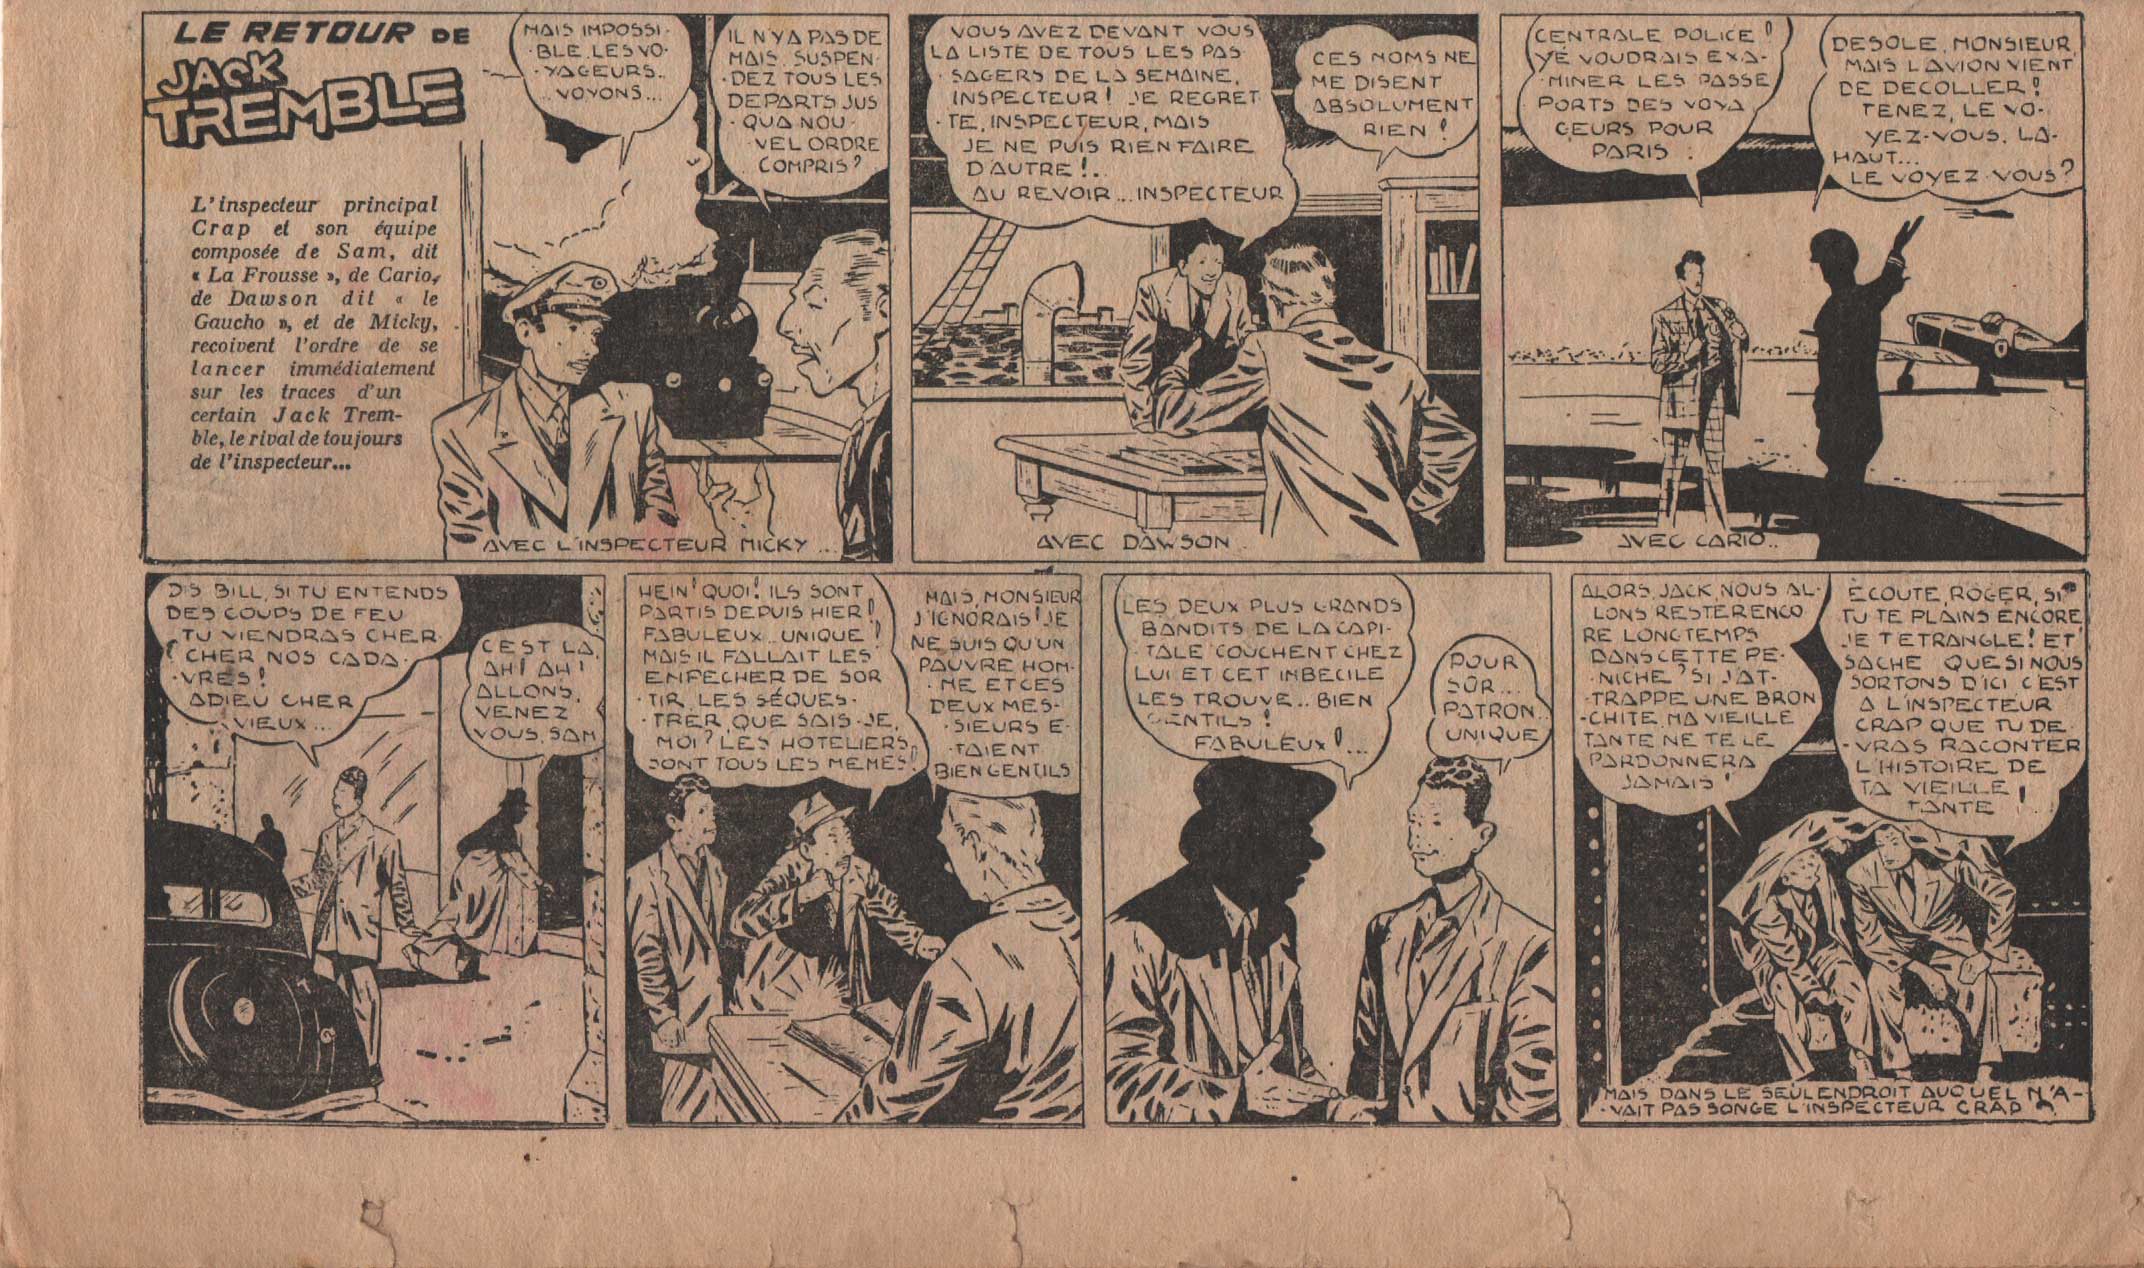 « Jack Tremble » Vaillant n° 114 (17/07/1947).